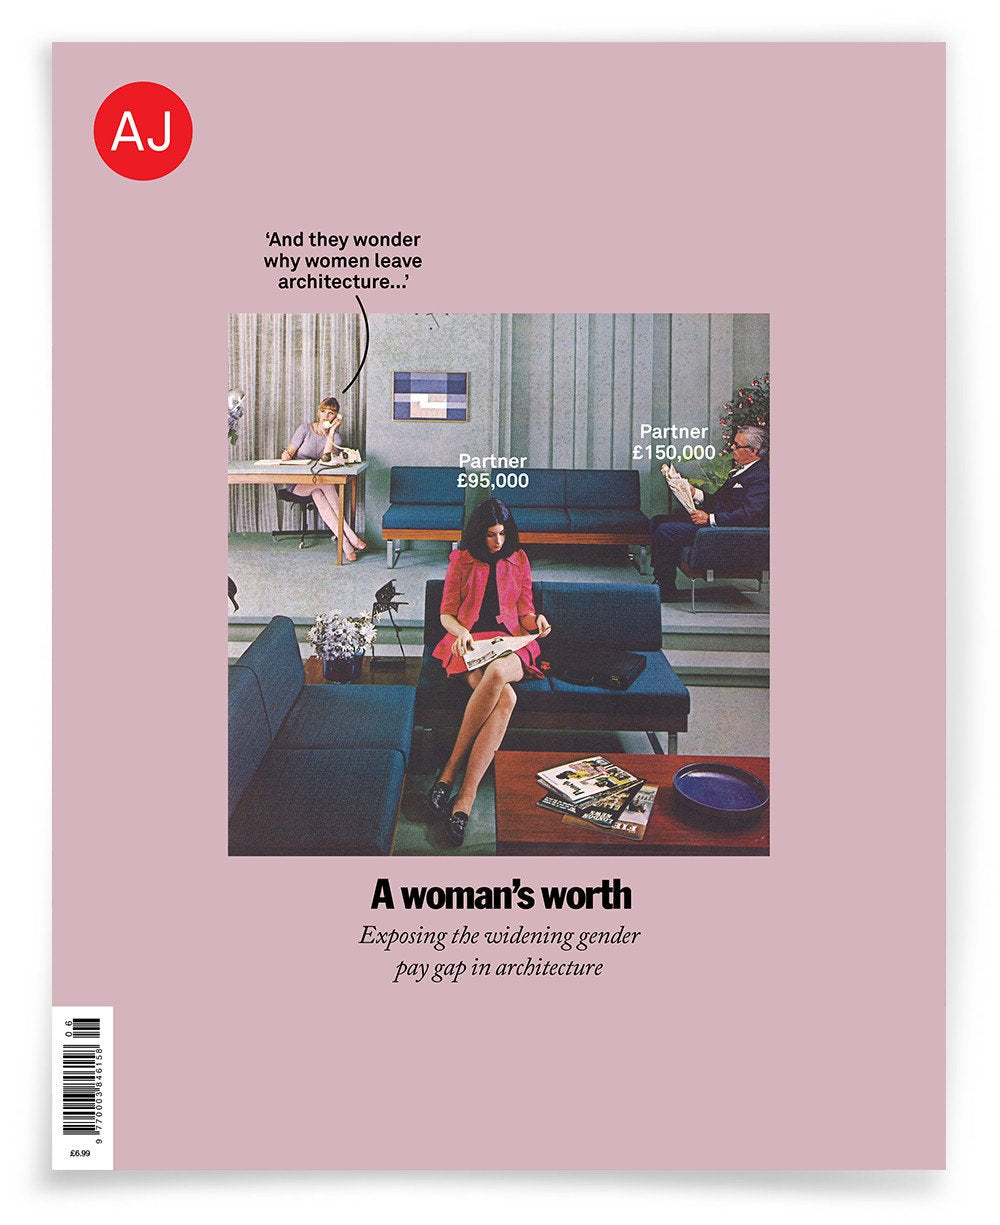 AJ 09.02.17: Women in Architecture